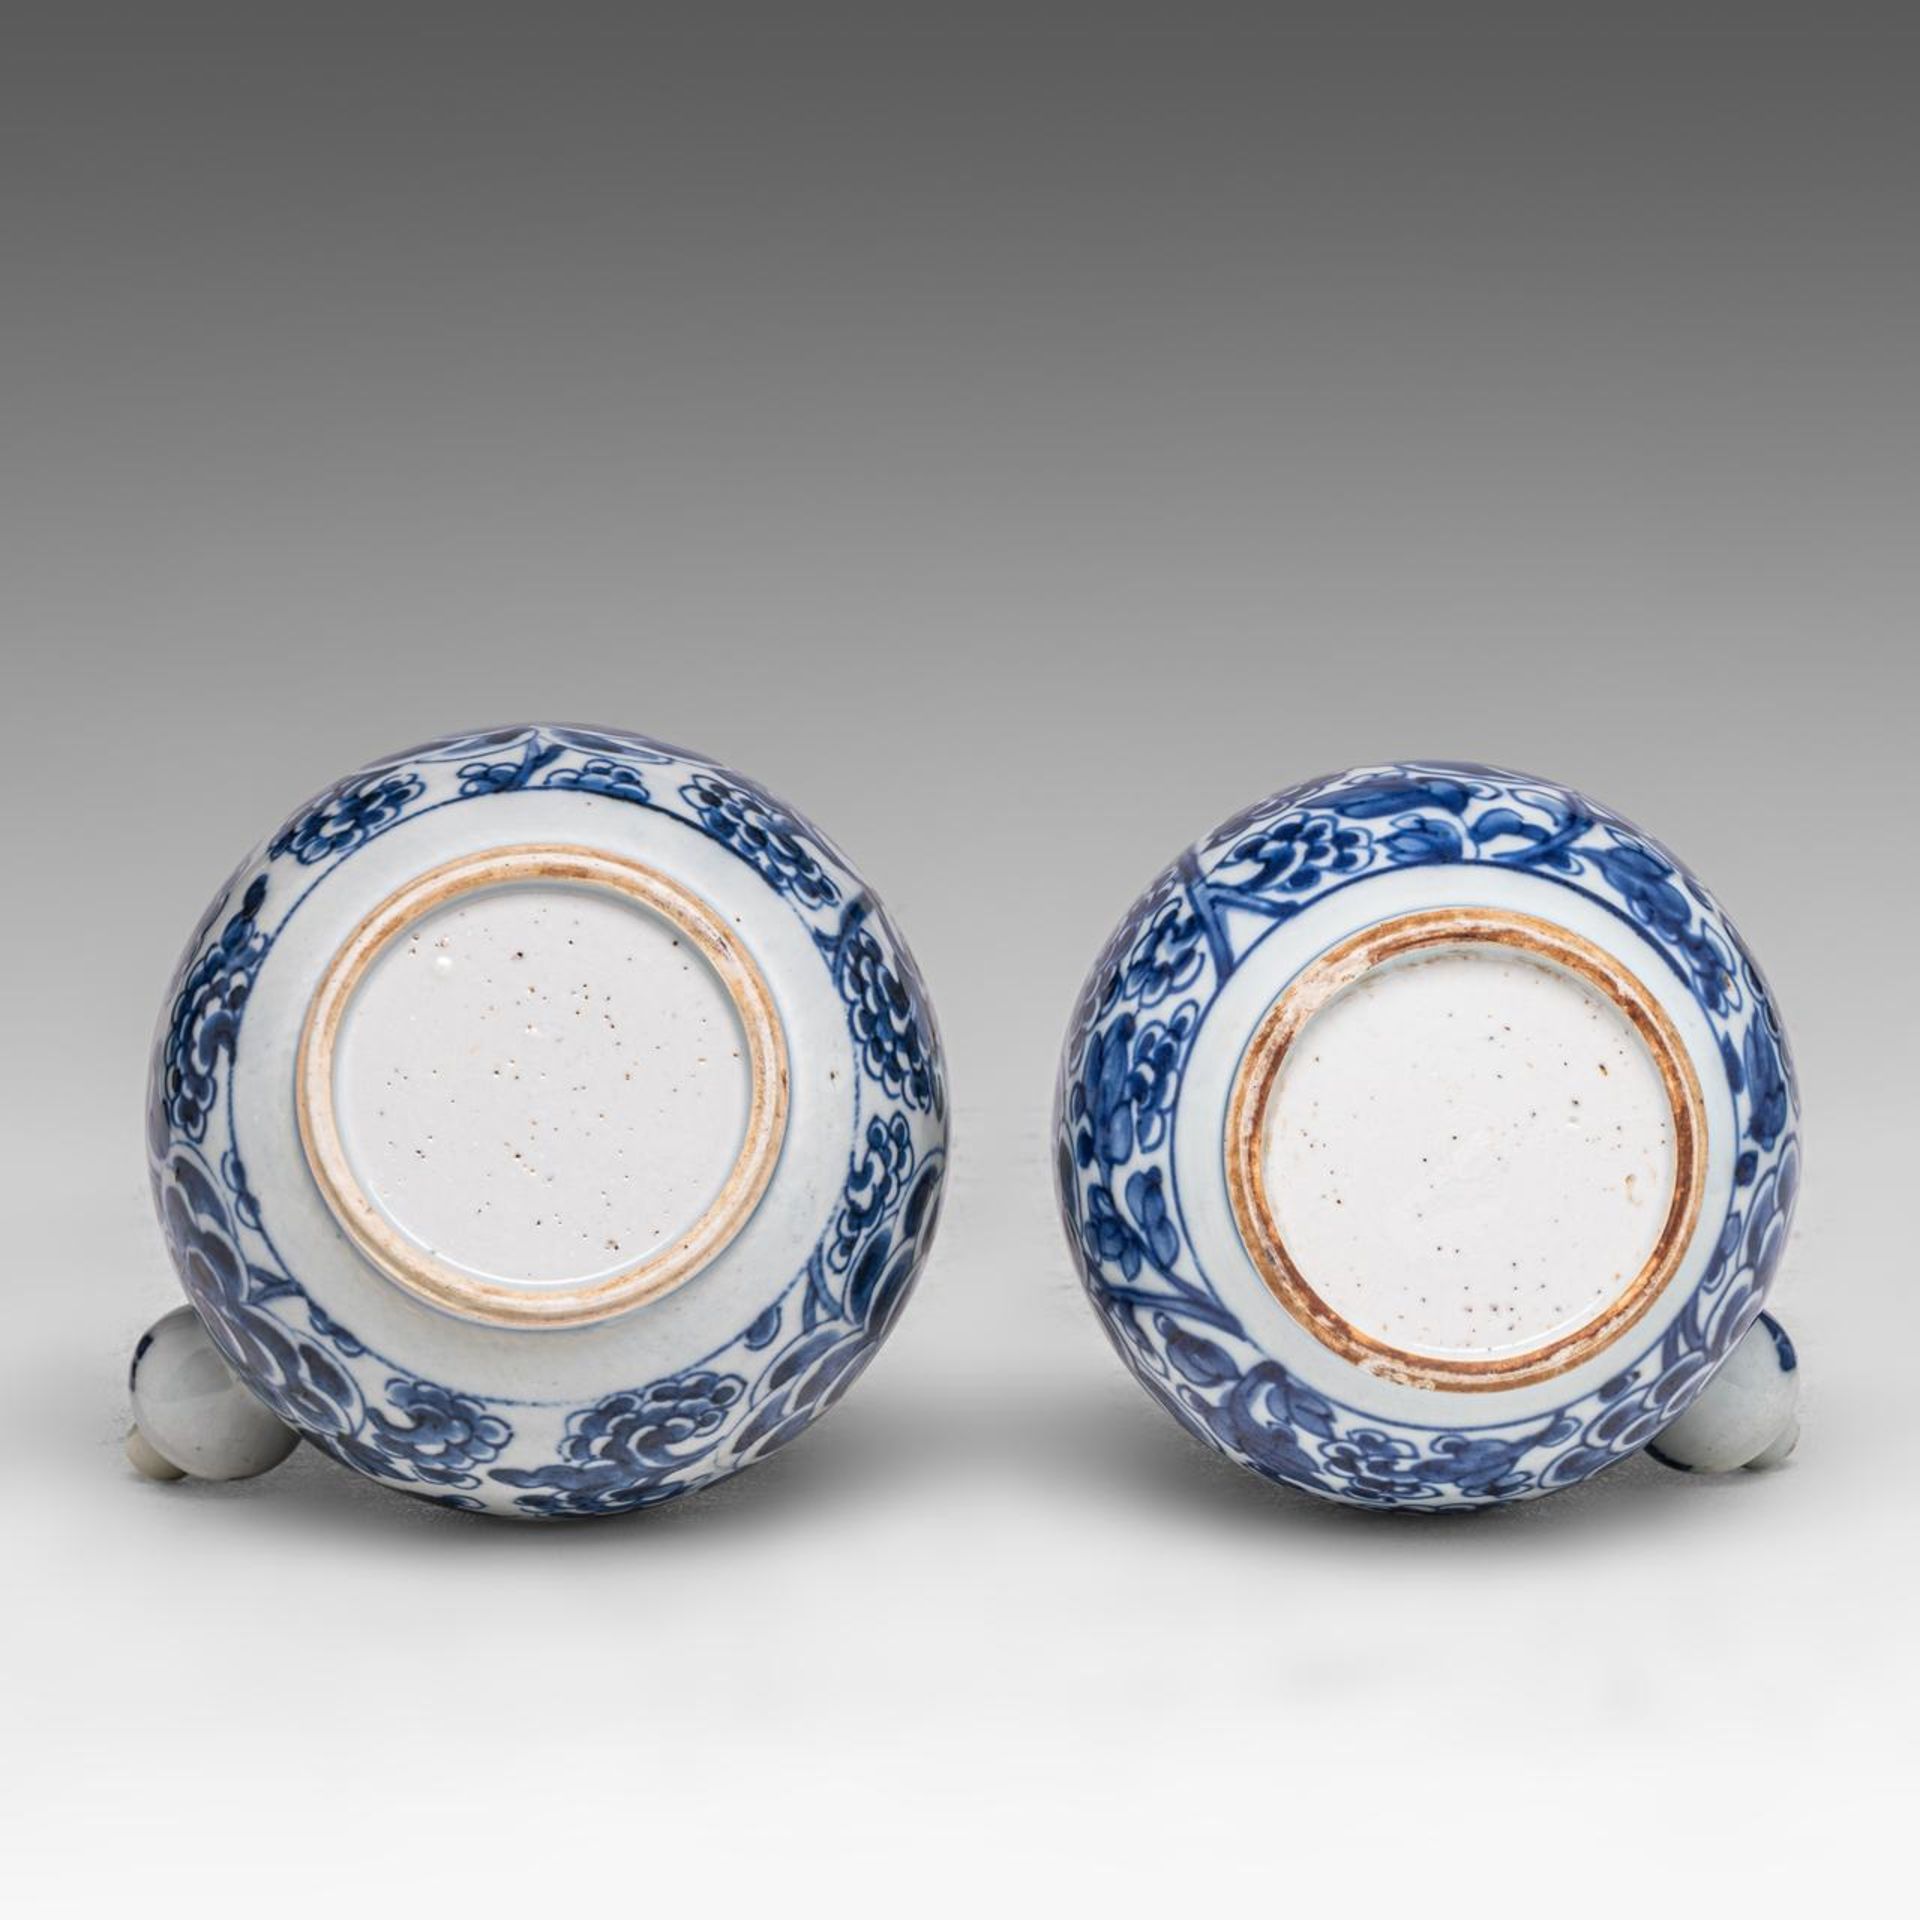 Two Chinese 'Peony scrolls' kendi jugs, Transitional/ Kangxi period, H 20 cm - Image 7 of 7